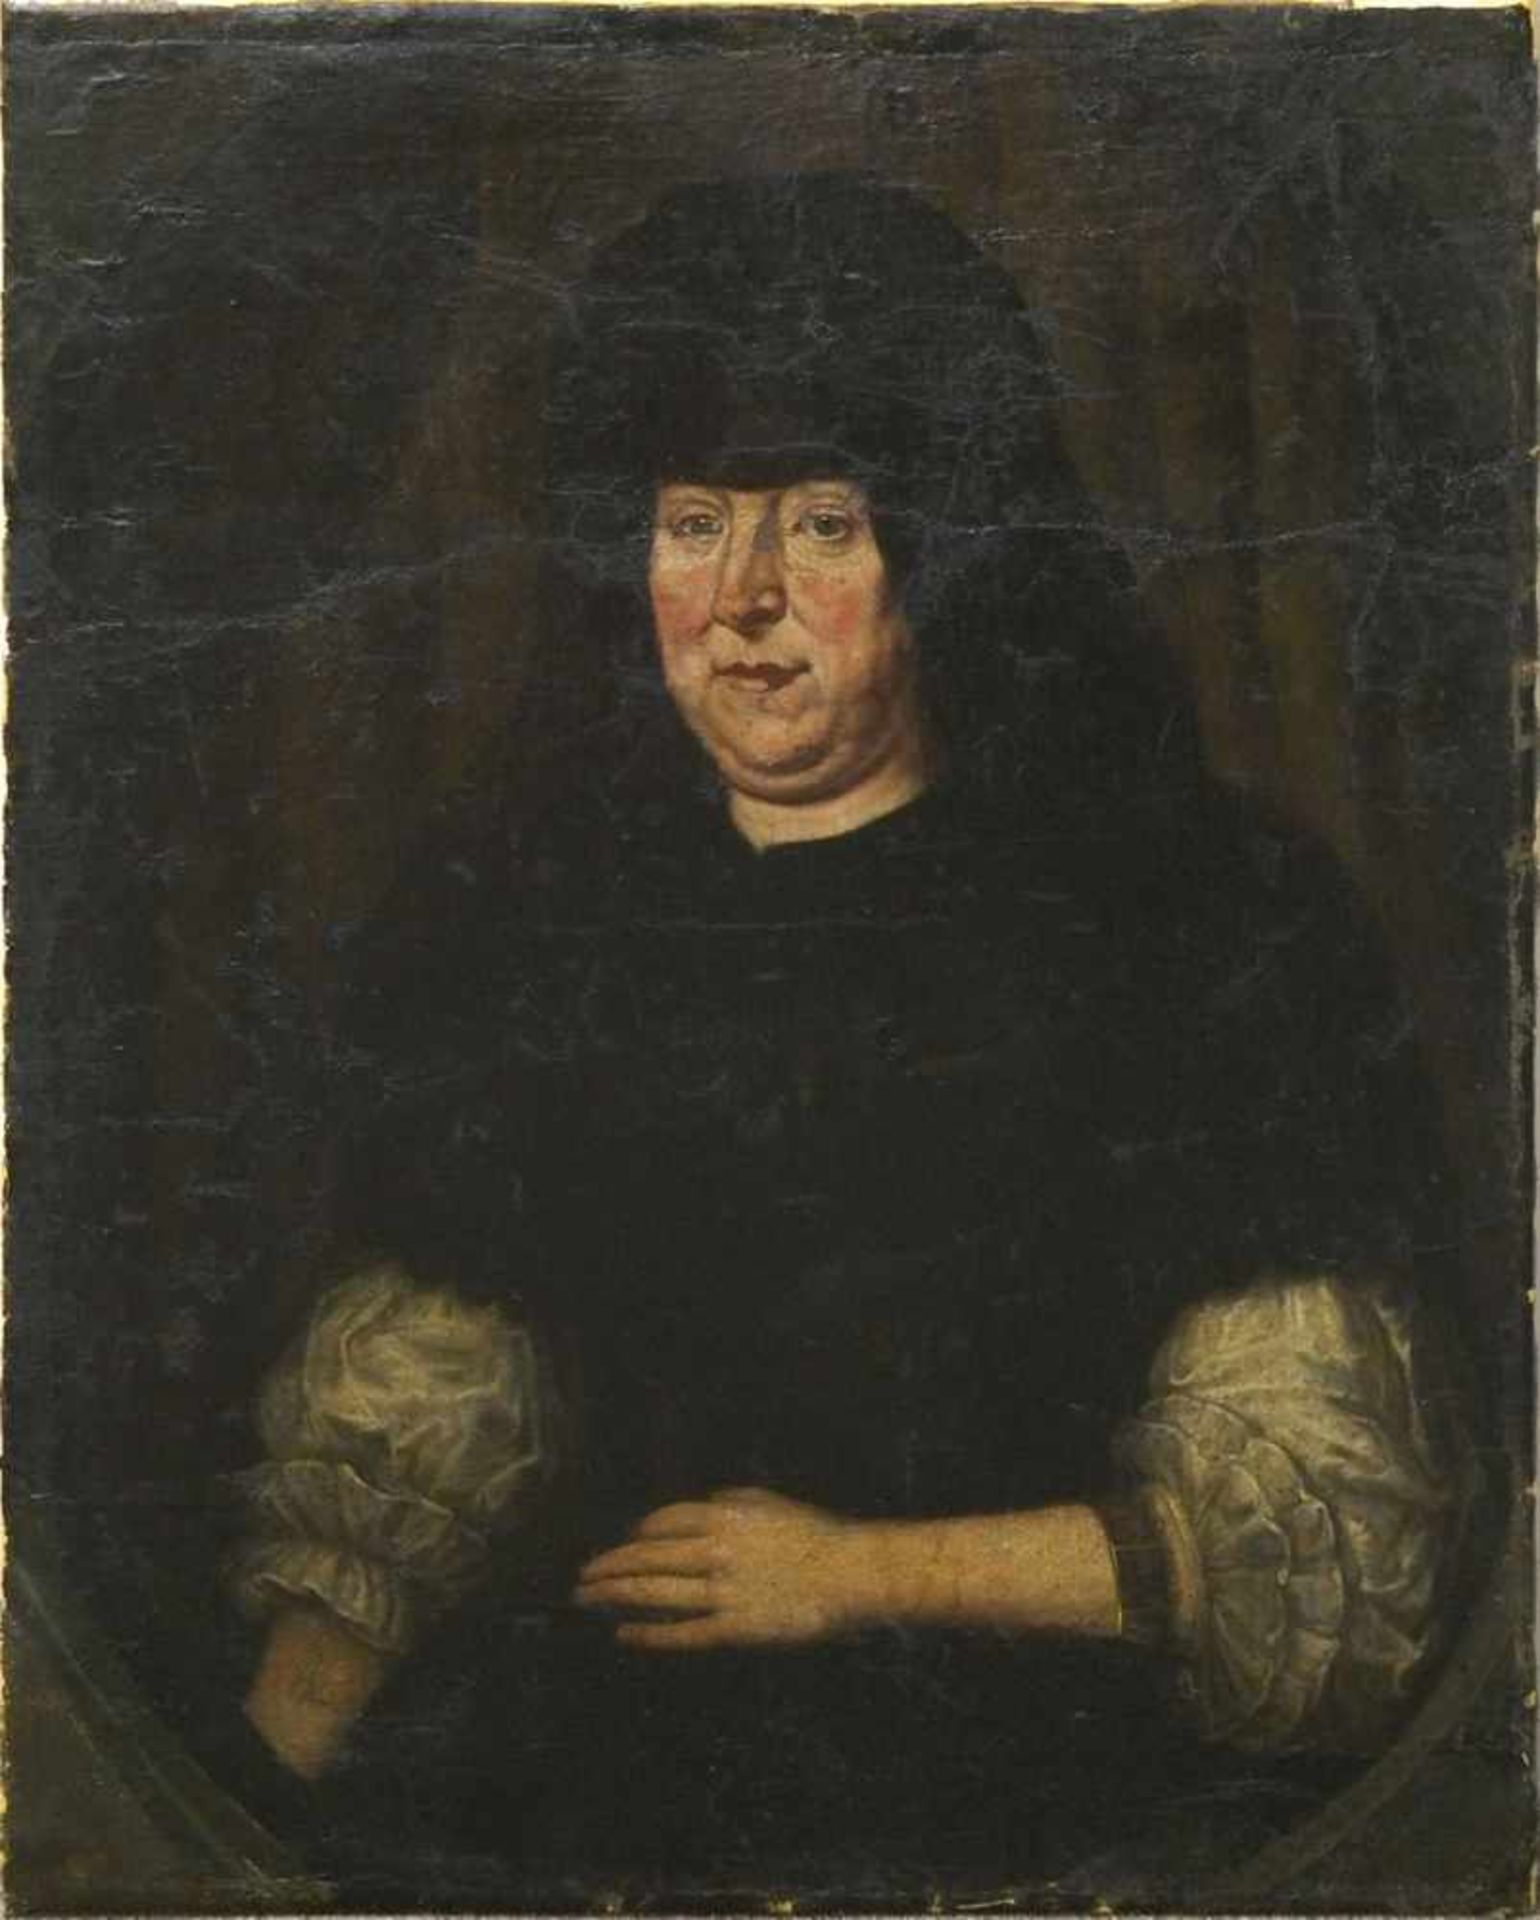 Porträtmaler 17. Jh. "Bildnis Elisabeth Osterhausen, geborene von Luckowin, 1632-1703, aus